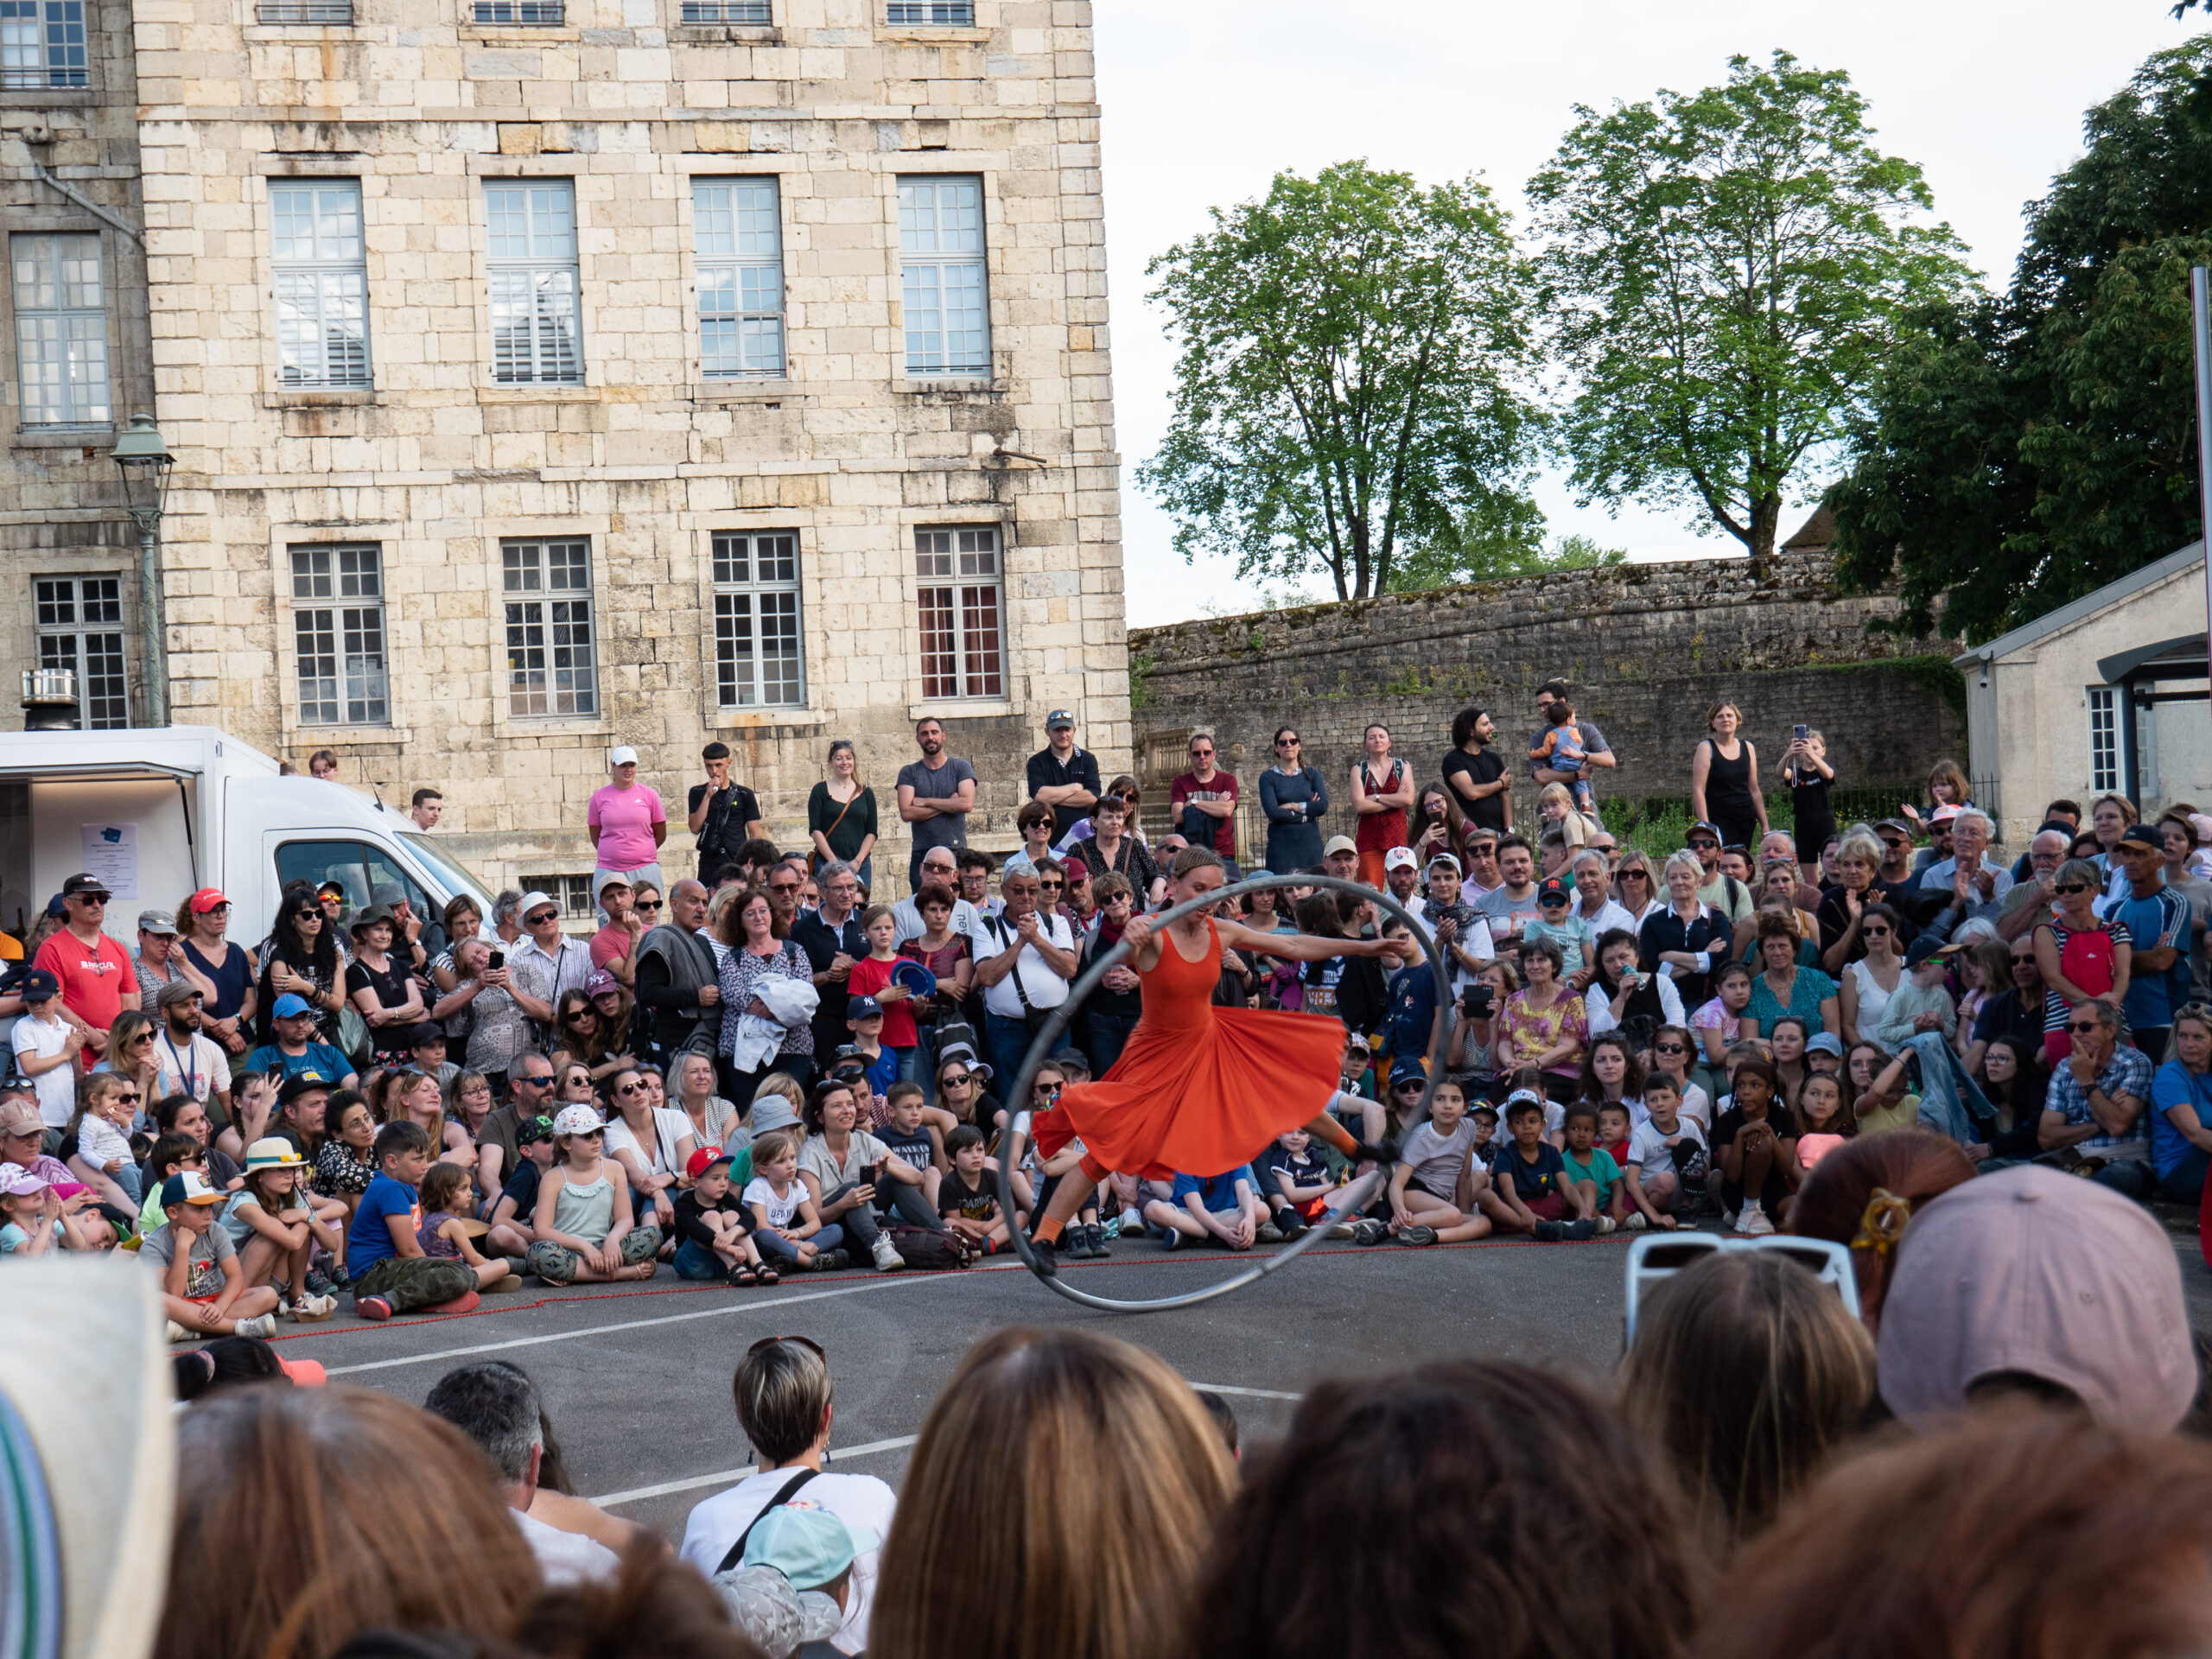 Une femme acrobate en robe rouge qui fait un numéro sur un grand cerceau, entourée d'une foule composée de nombreux enfants